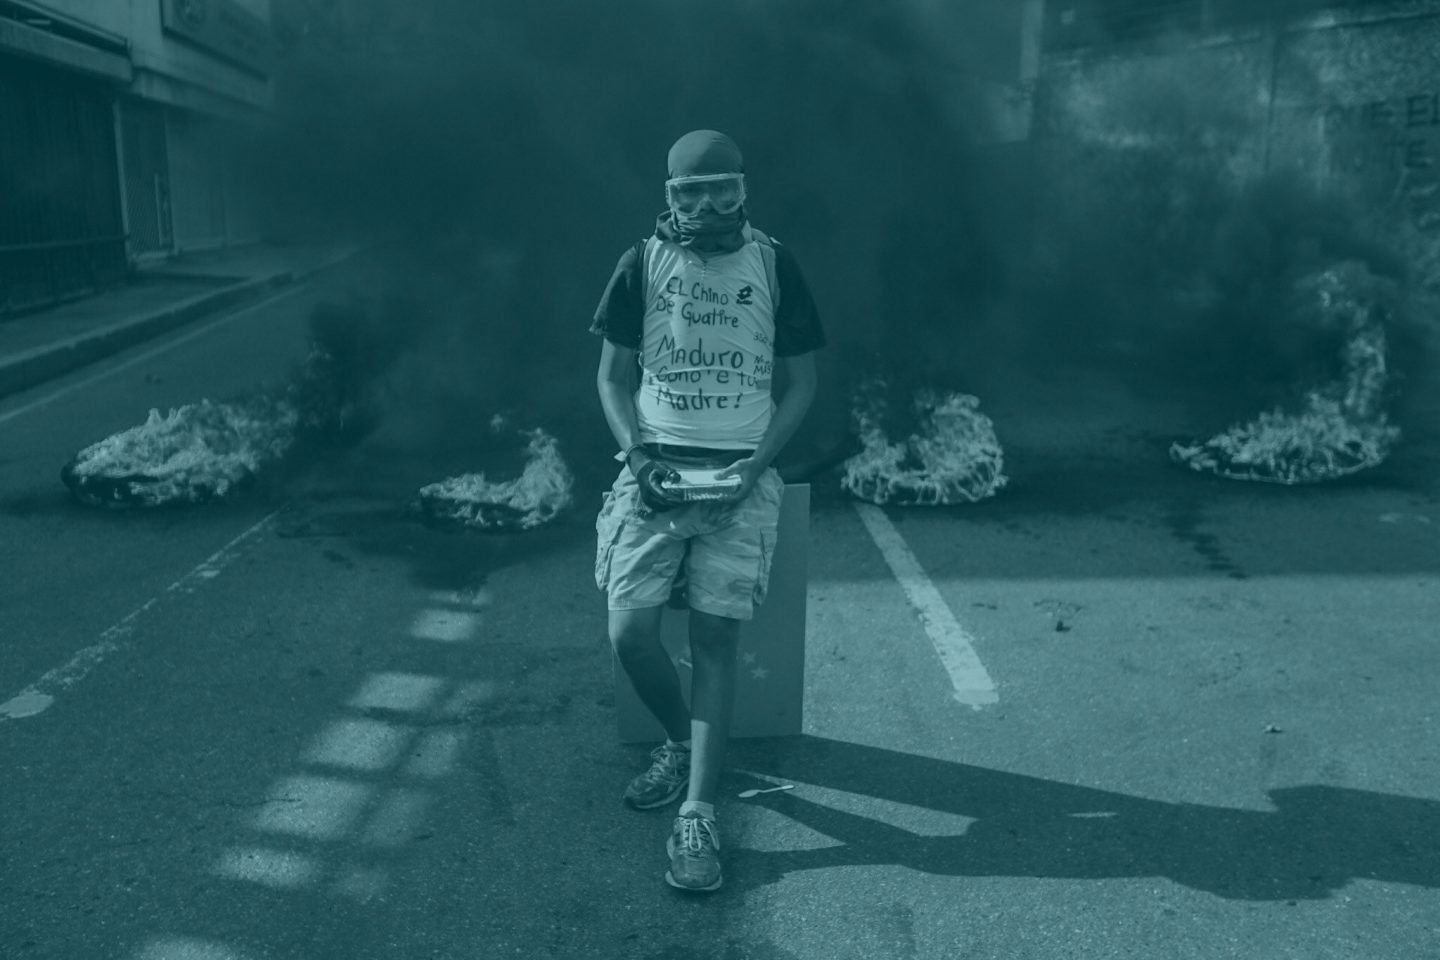 Un manifestante permanece en frente de una barricada en llamas durante una manifestación en Venezuela.